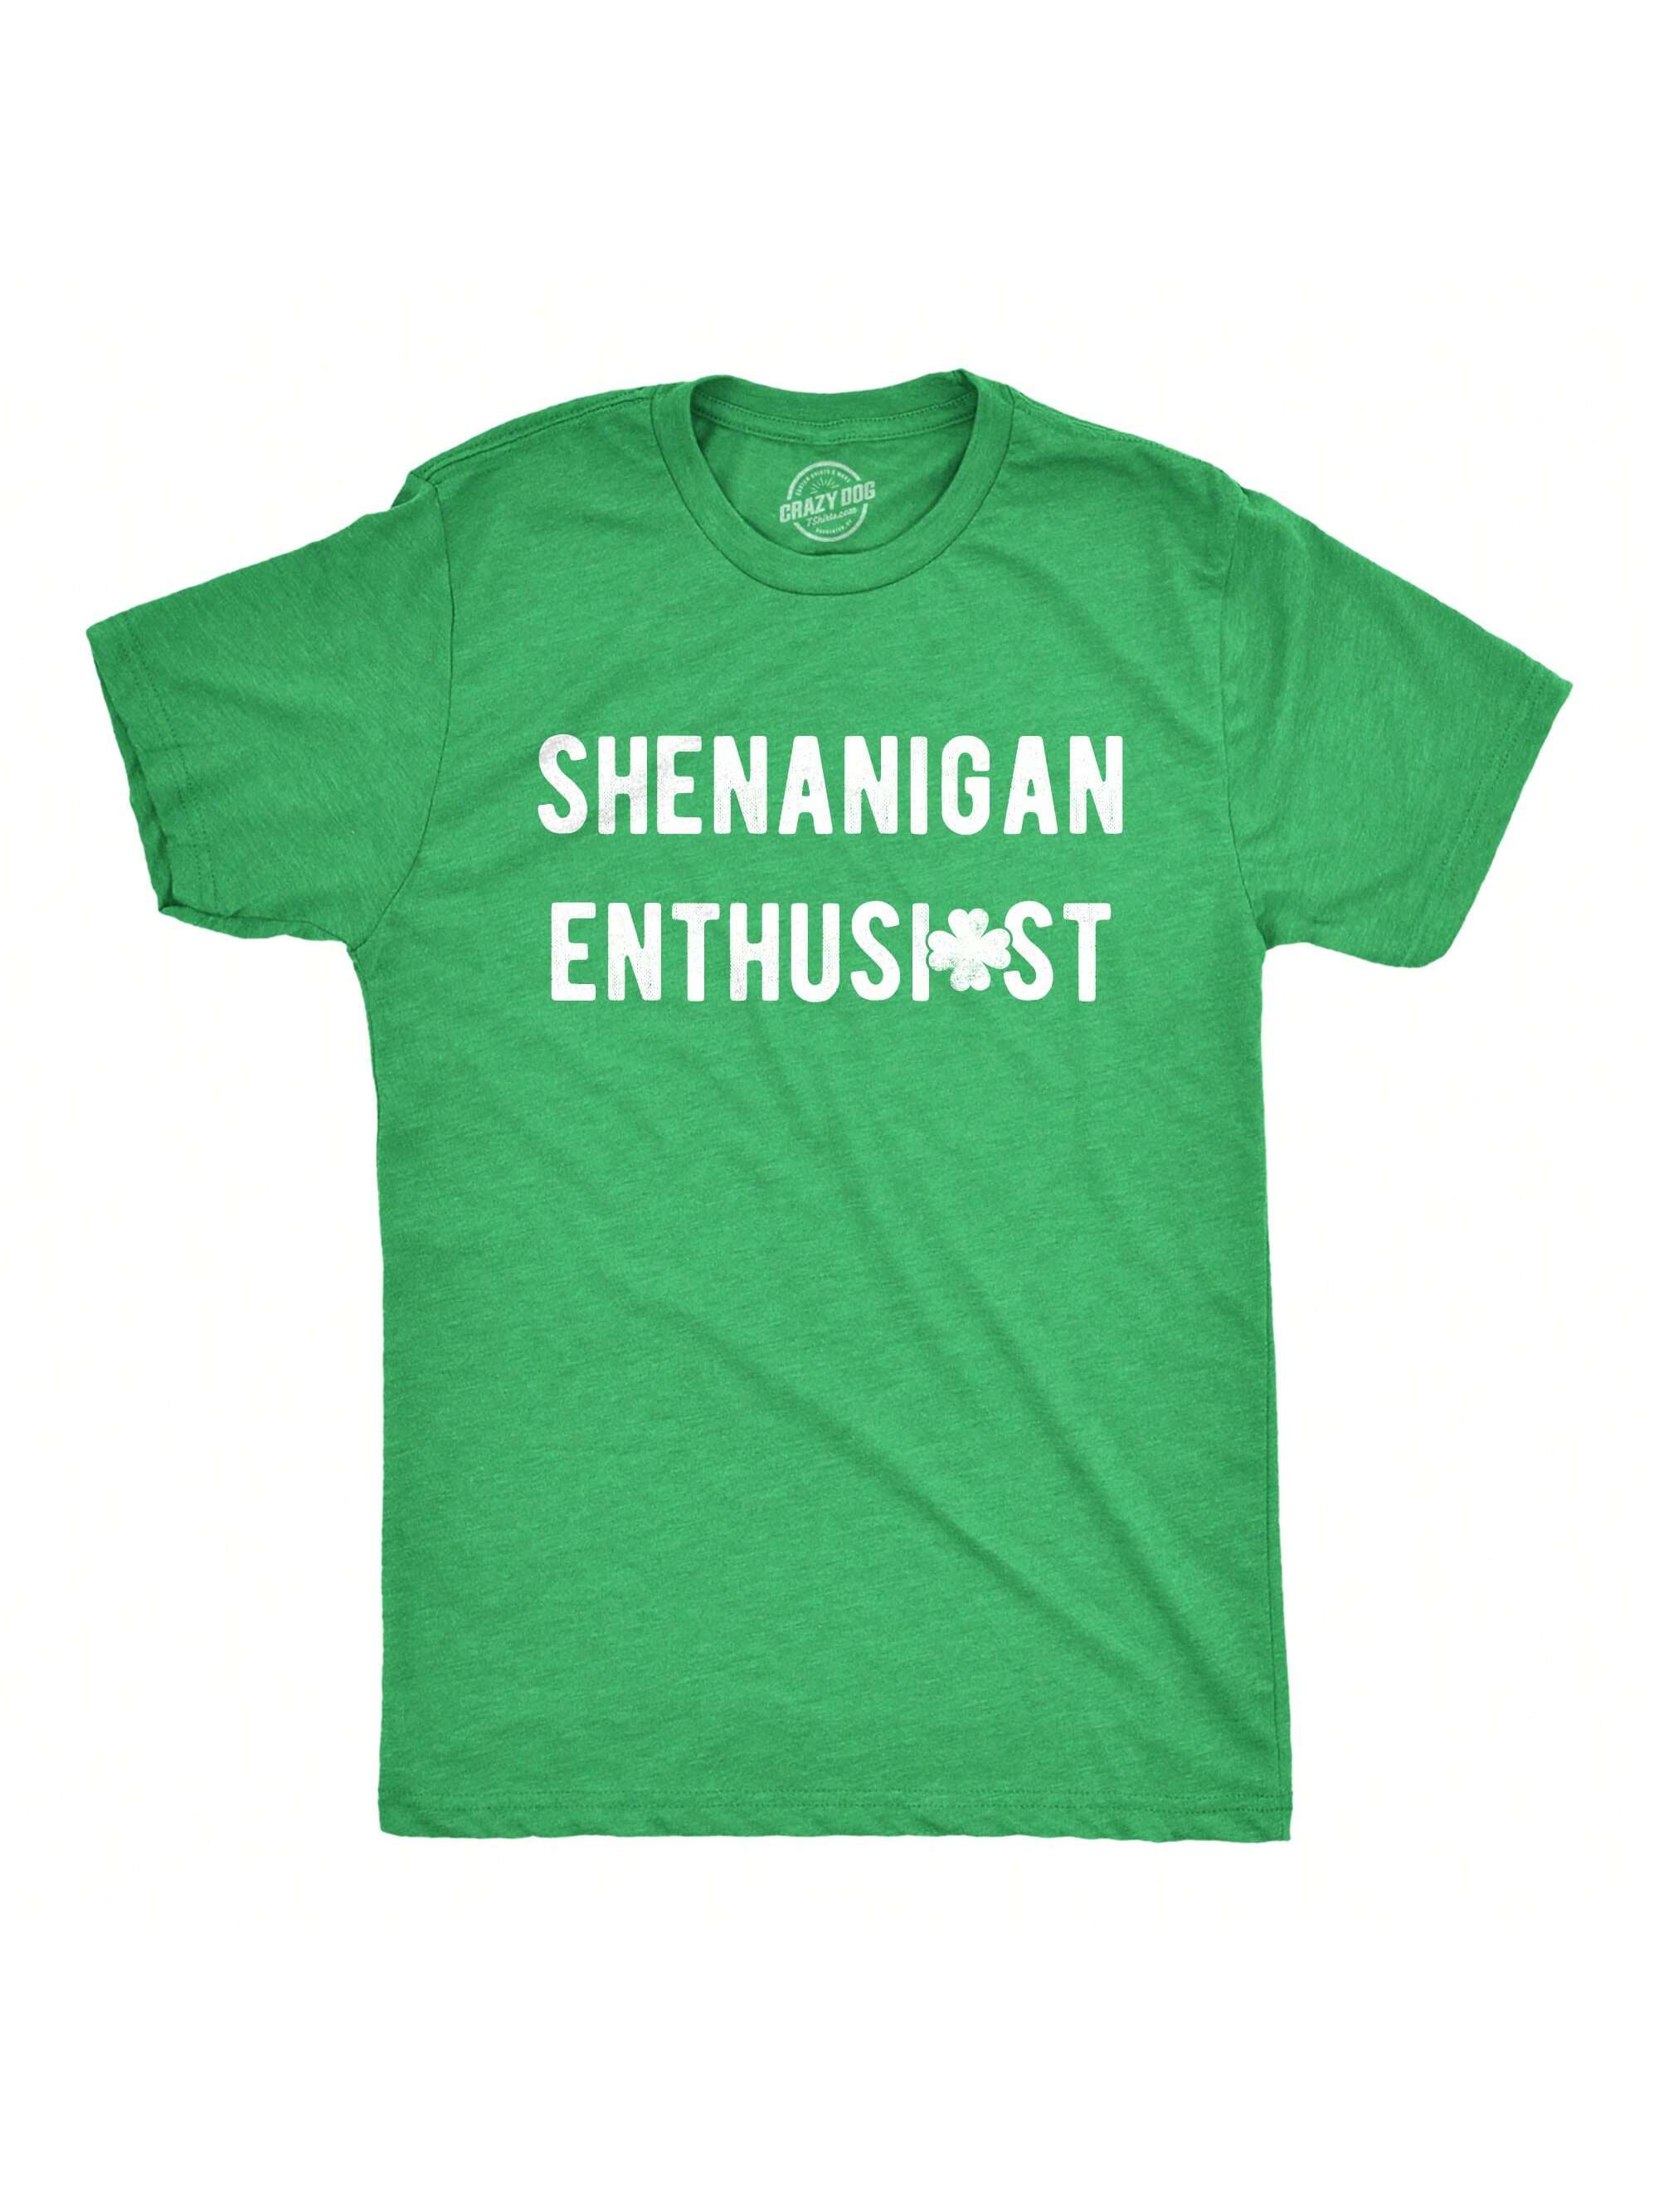 цена Мужская футболка с флагом США Shamrock, хизер грин - текст для энтузиастов шенанигана